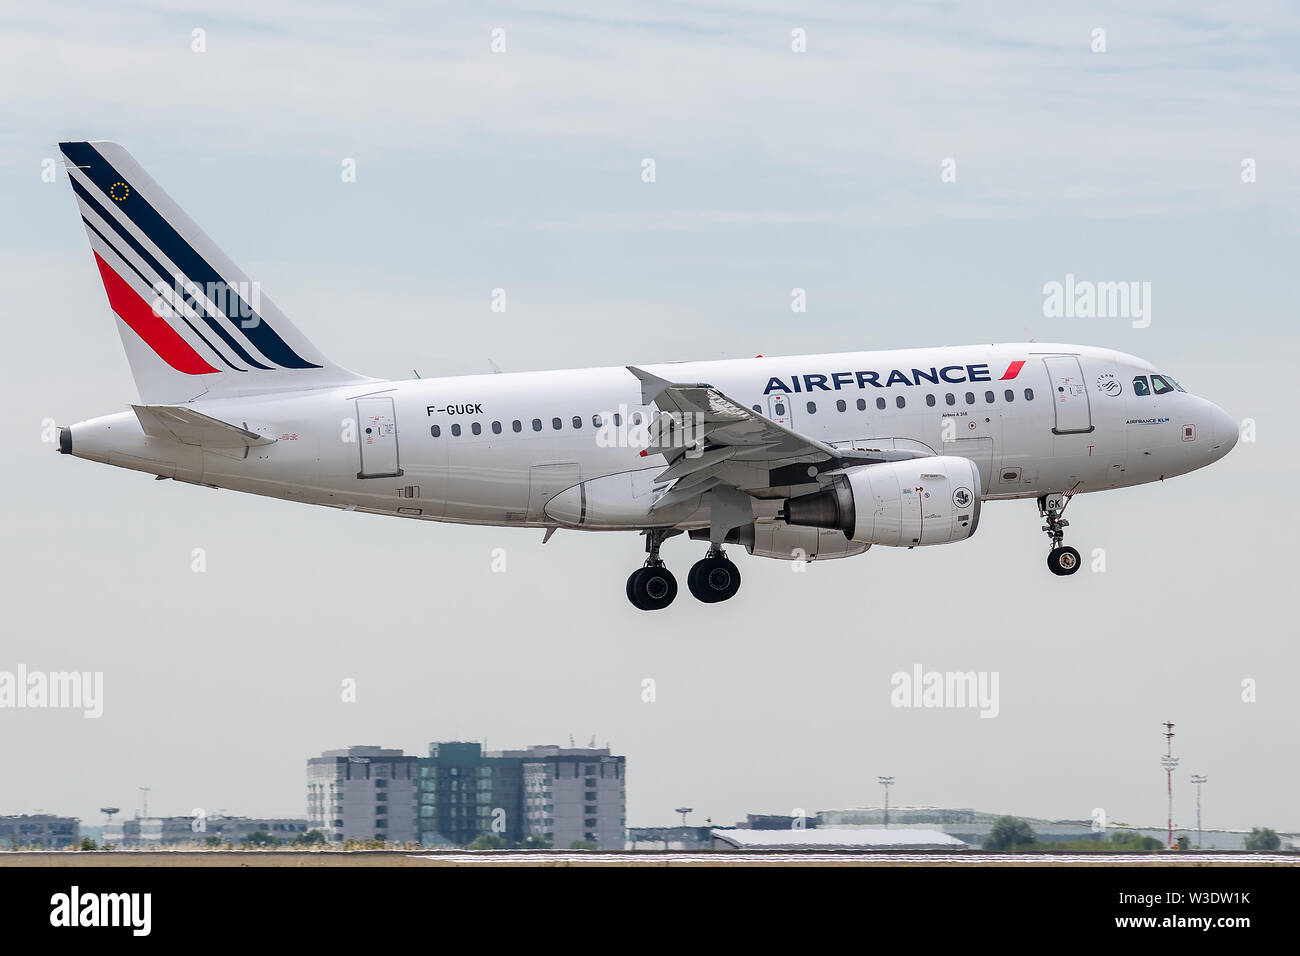 F-GUGK, 11 juillet 2019, l'Airbus A318-111-2601 atterrissage sur les pistes de l'aéroport Paris Roissy Charles de Gaulle à la fin de vol Air France AF773 Banque D'Images